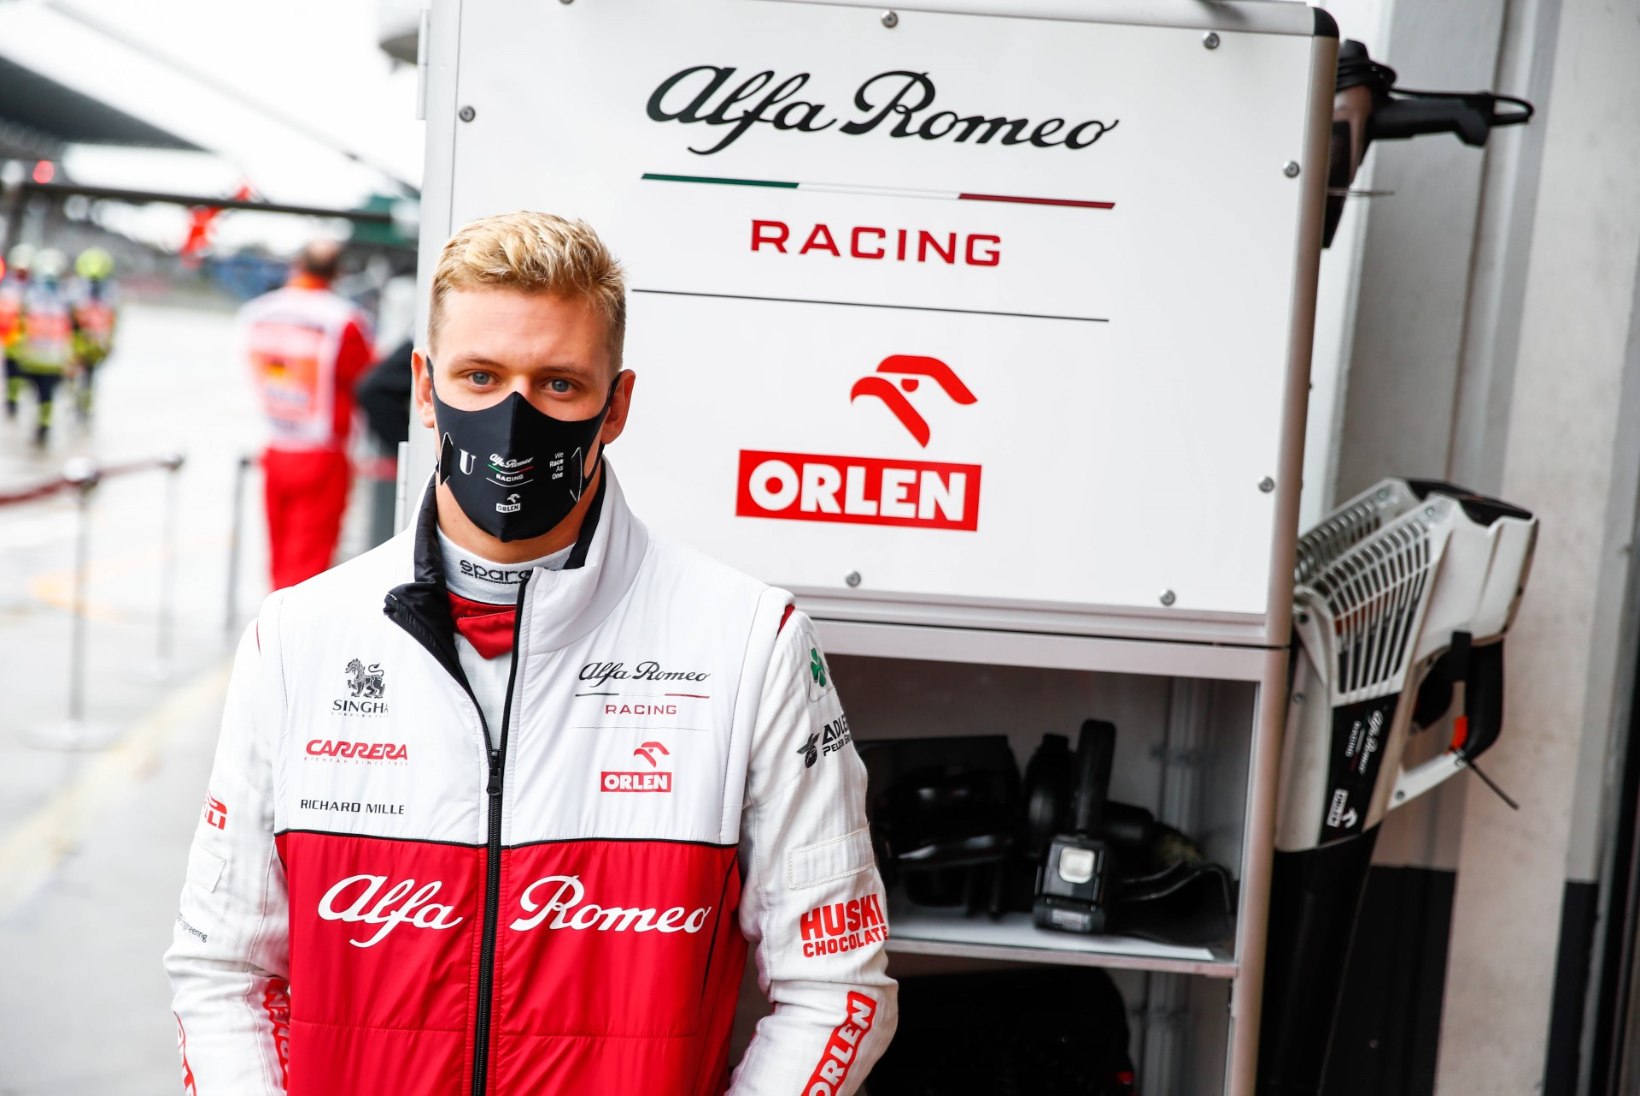 ÜLLATUS: Schumacher oli nädalavahetusel väga lähedal vormel 1 debüüdi tegemisele